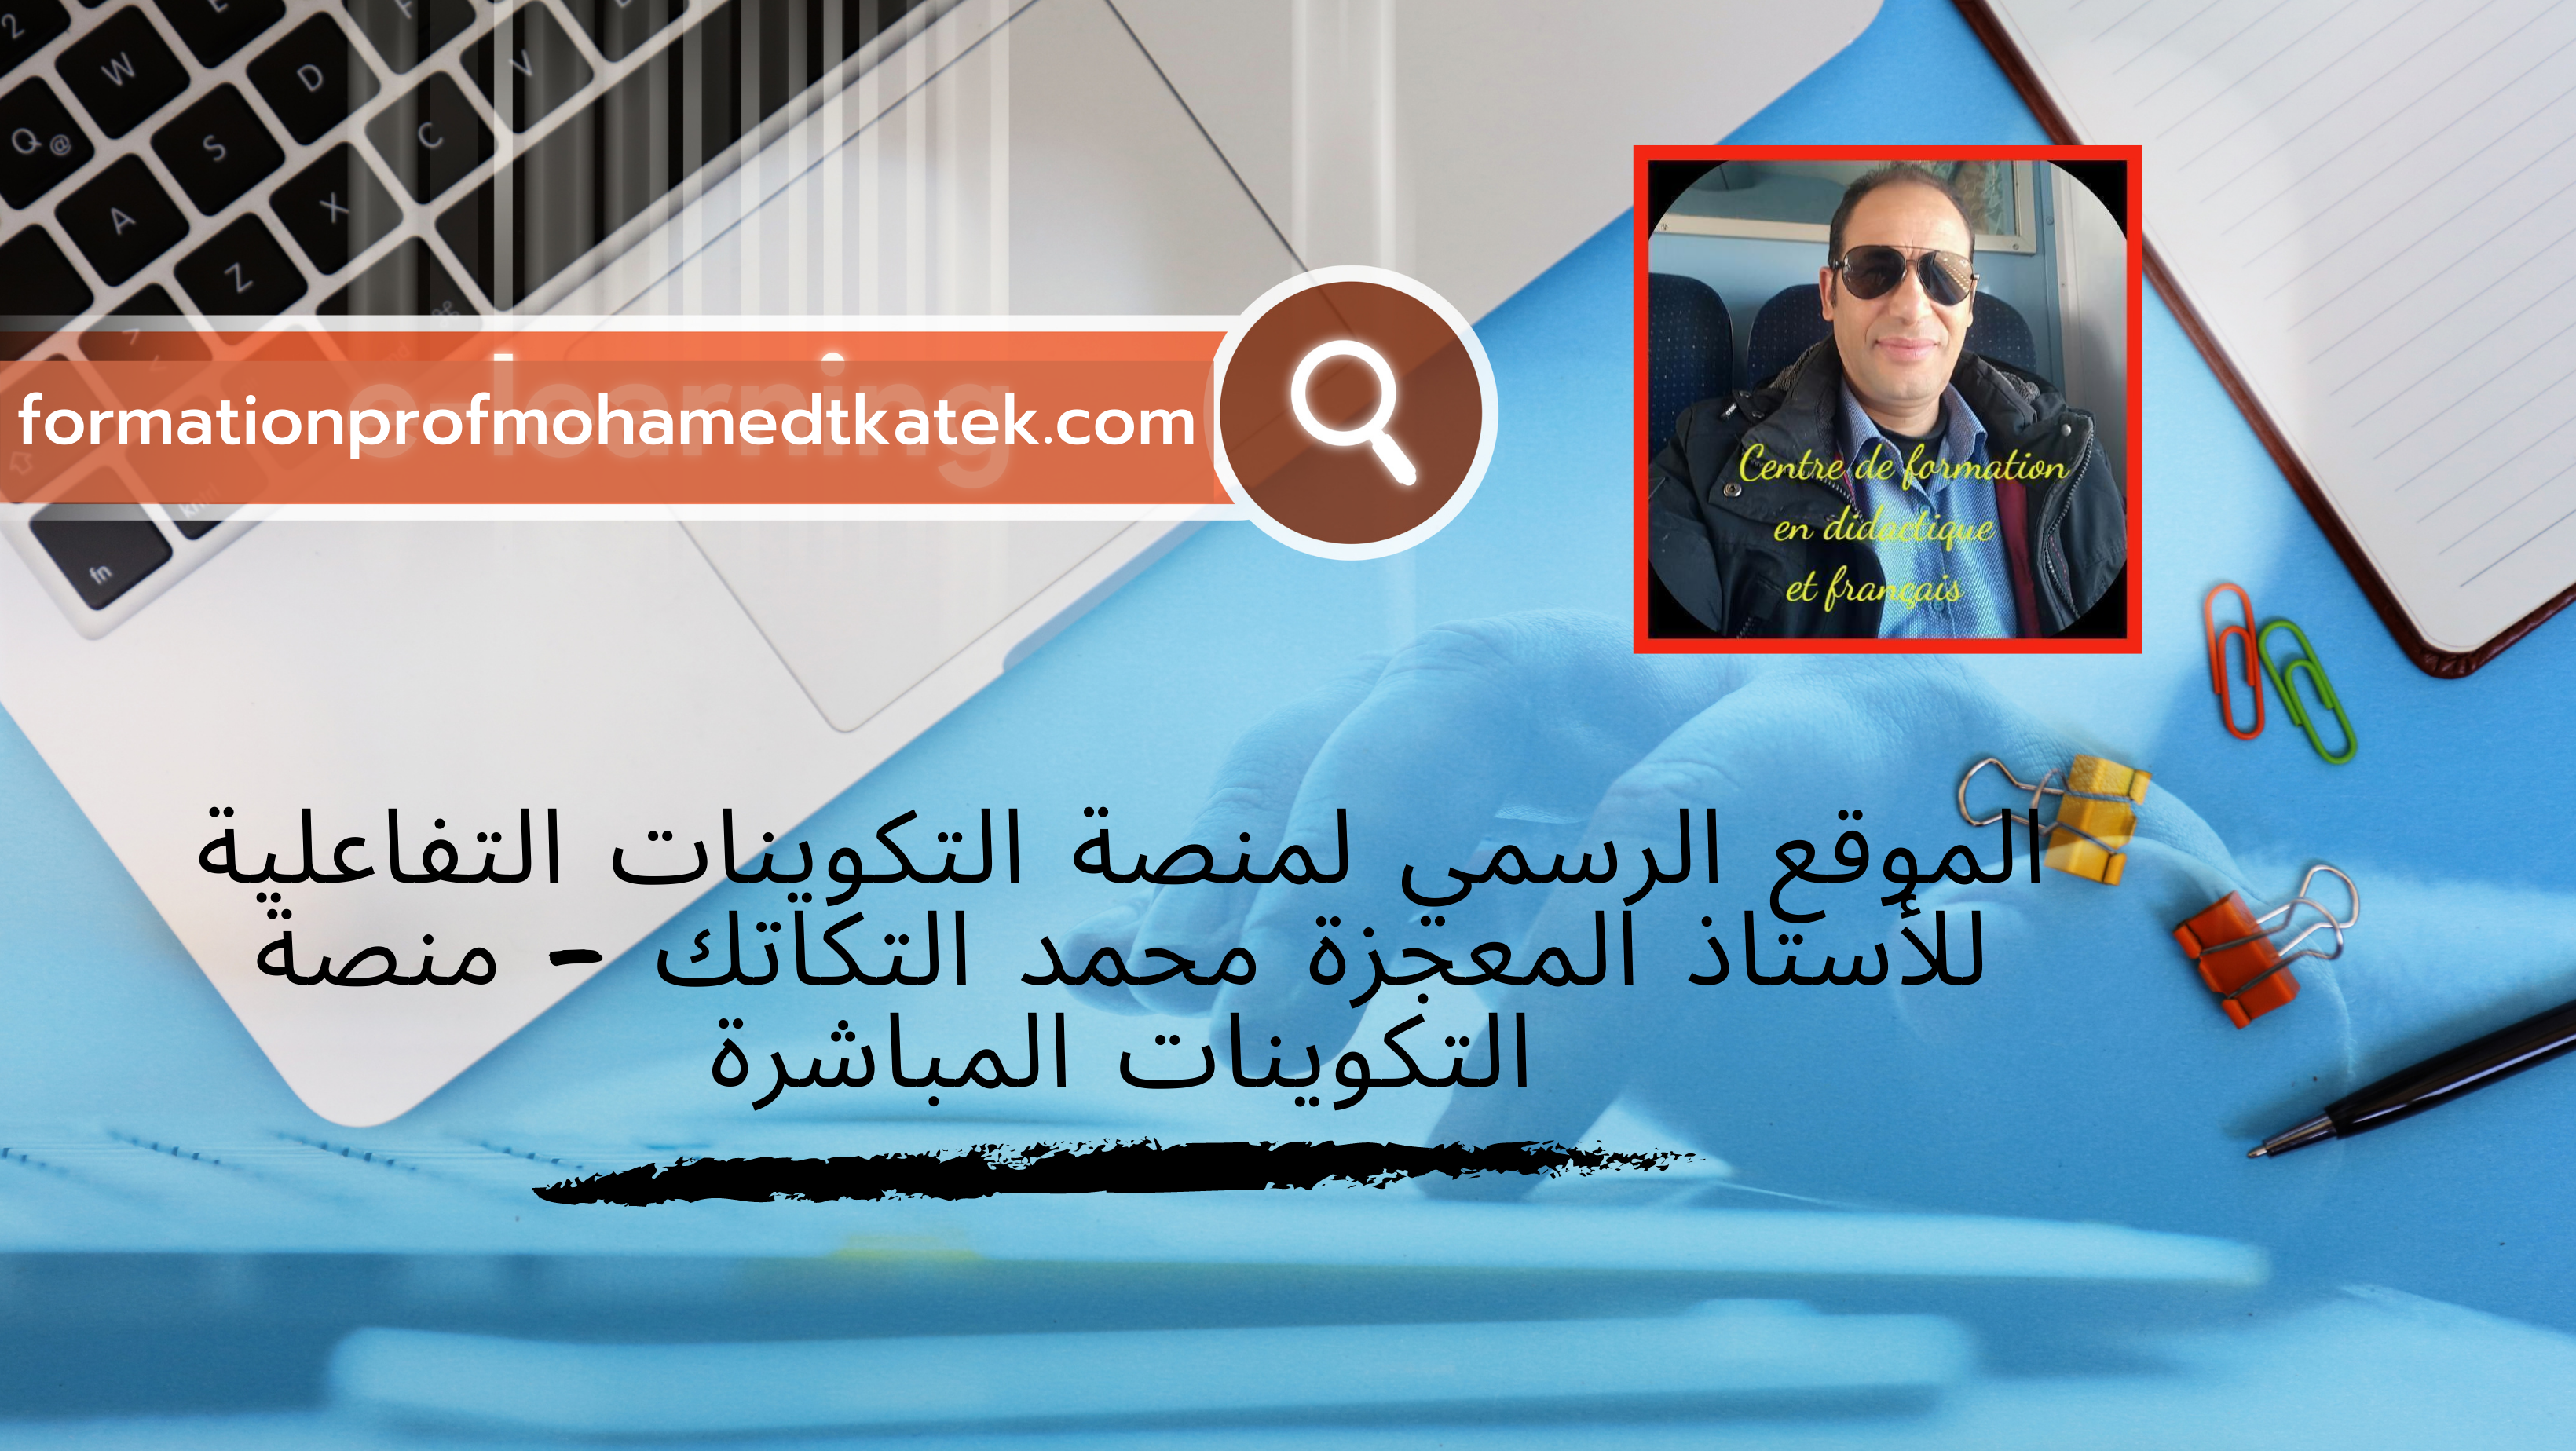 الموقع الرسمي لمنصة التكوينات التفاعلية للأستاذ المعجزة محمد التكاتك - منصة التكوينات المباشرة